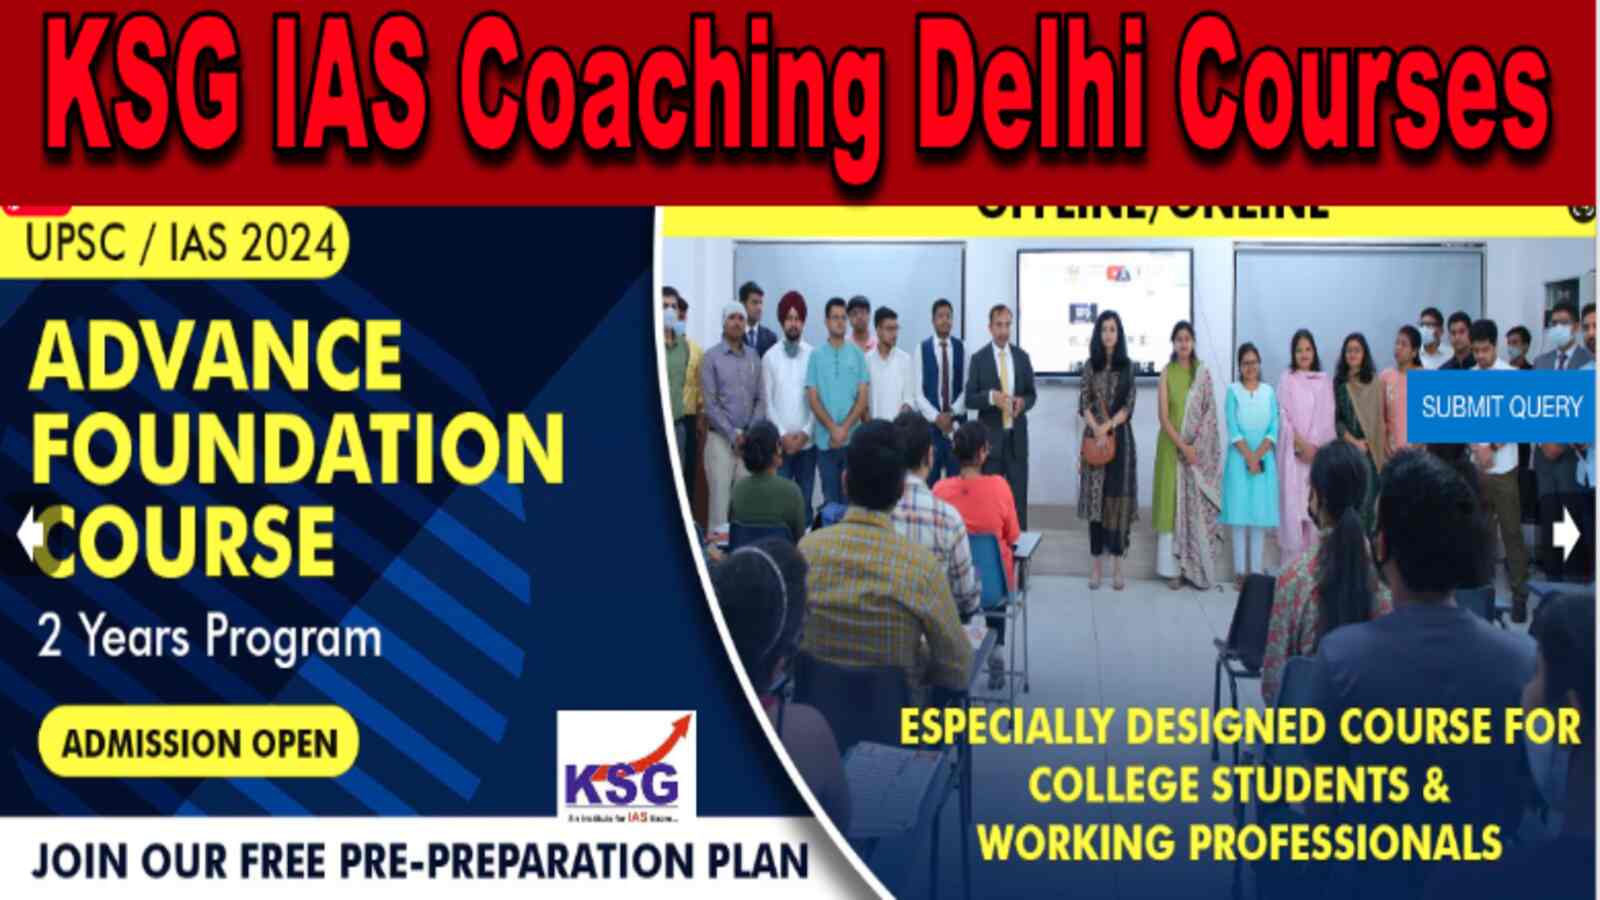 KSG IAS Coaching Delhi Courses Review